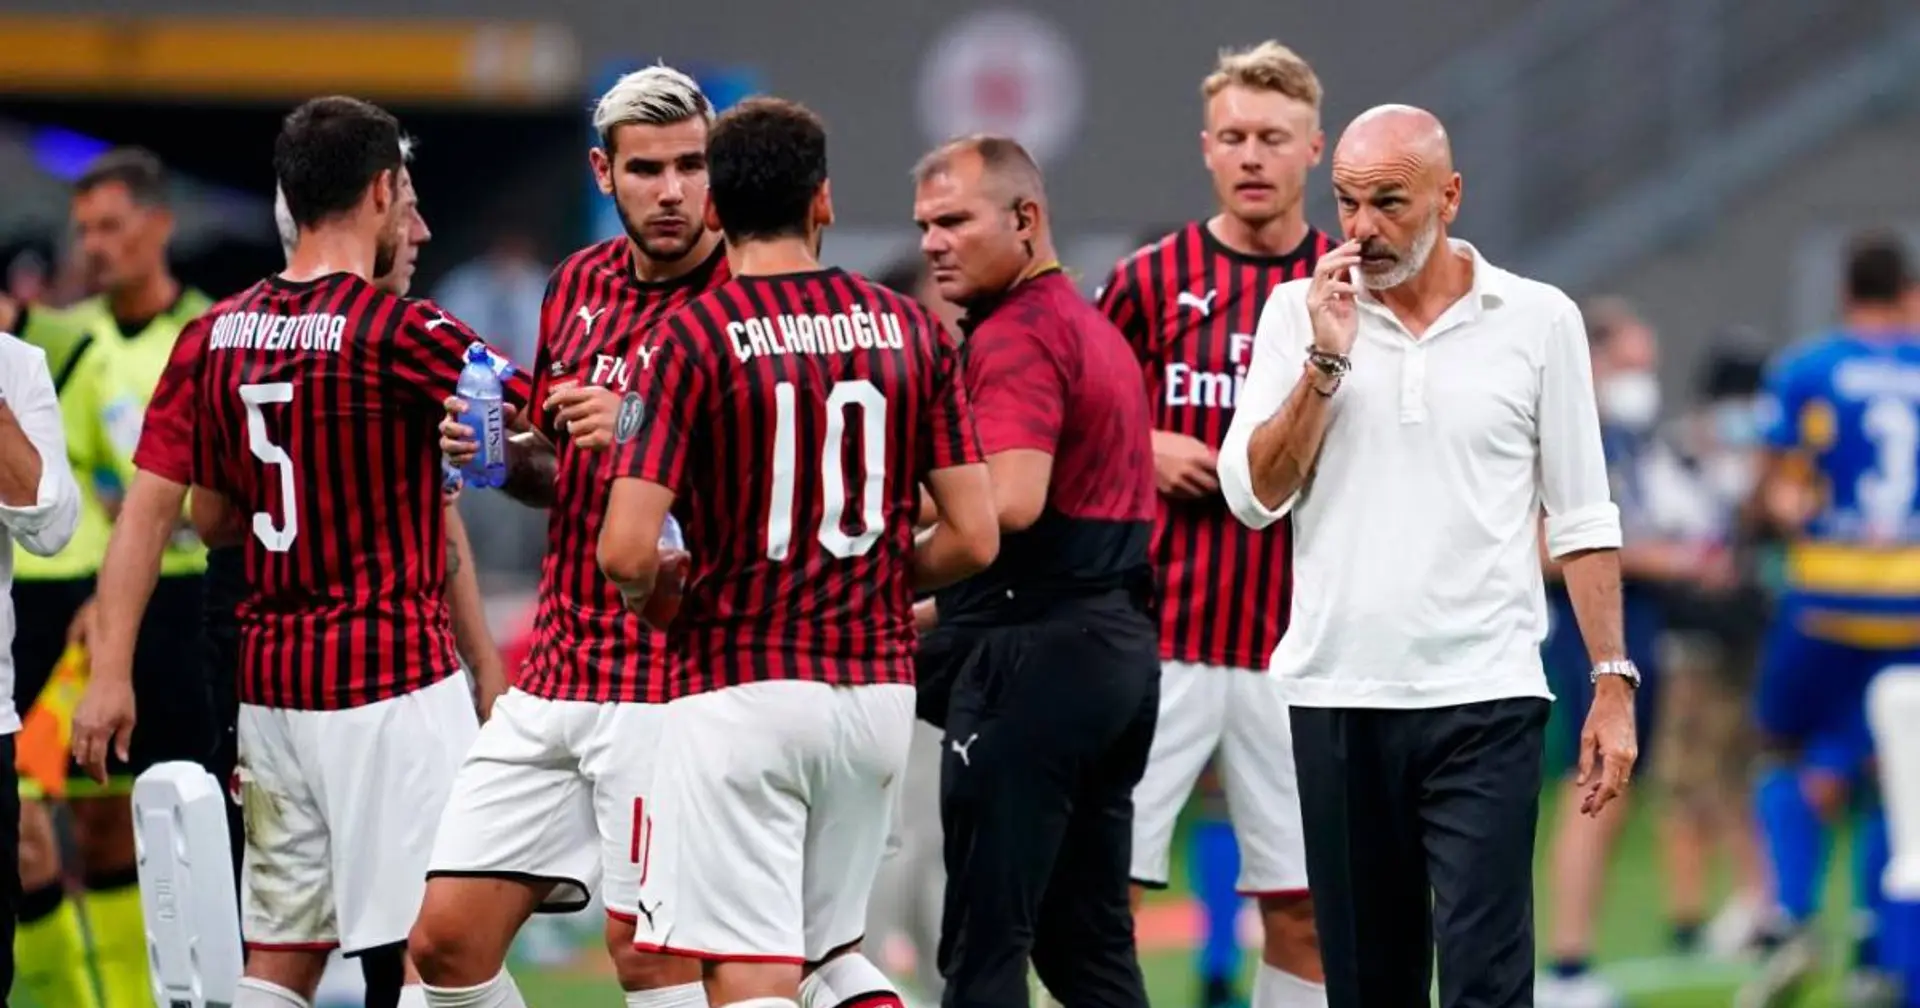 UFFICIALE | I convocati del Milan contro la Sampdoria: ancora out Conti. Castillejo c'è